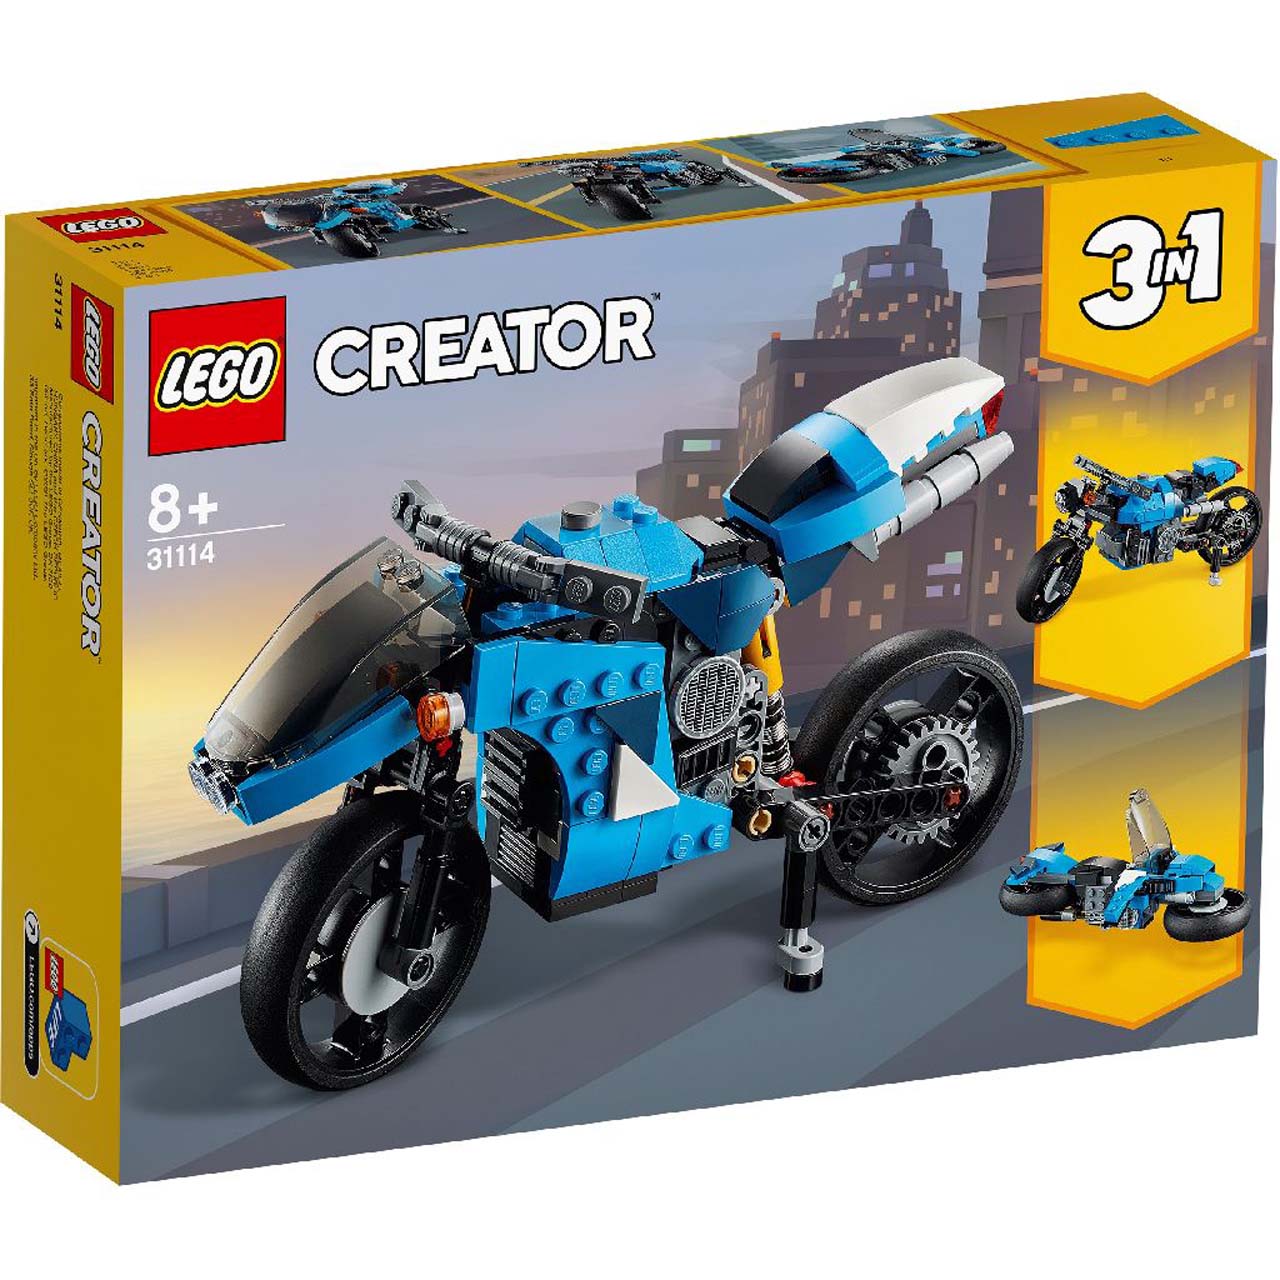 La super moto lego Creator